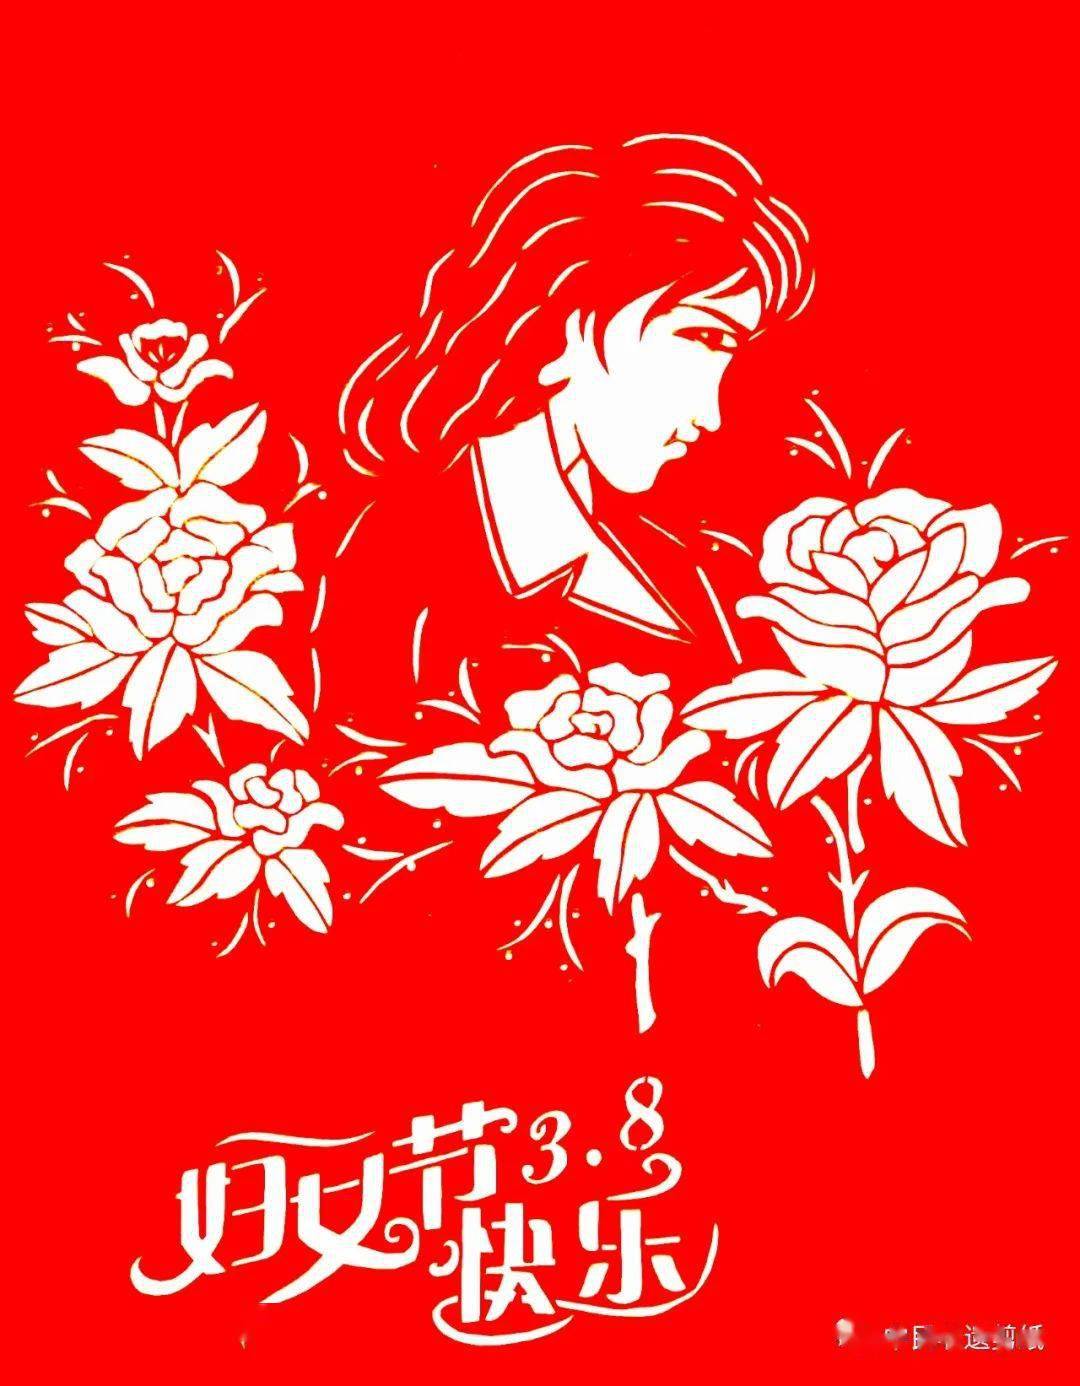 中民非遗剪纸传承人祝三八妇女节快乐